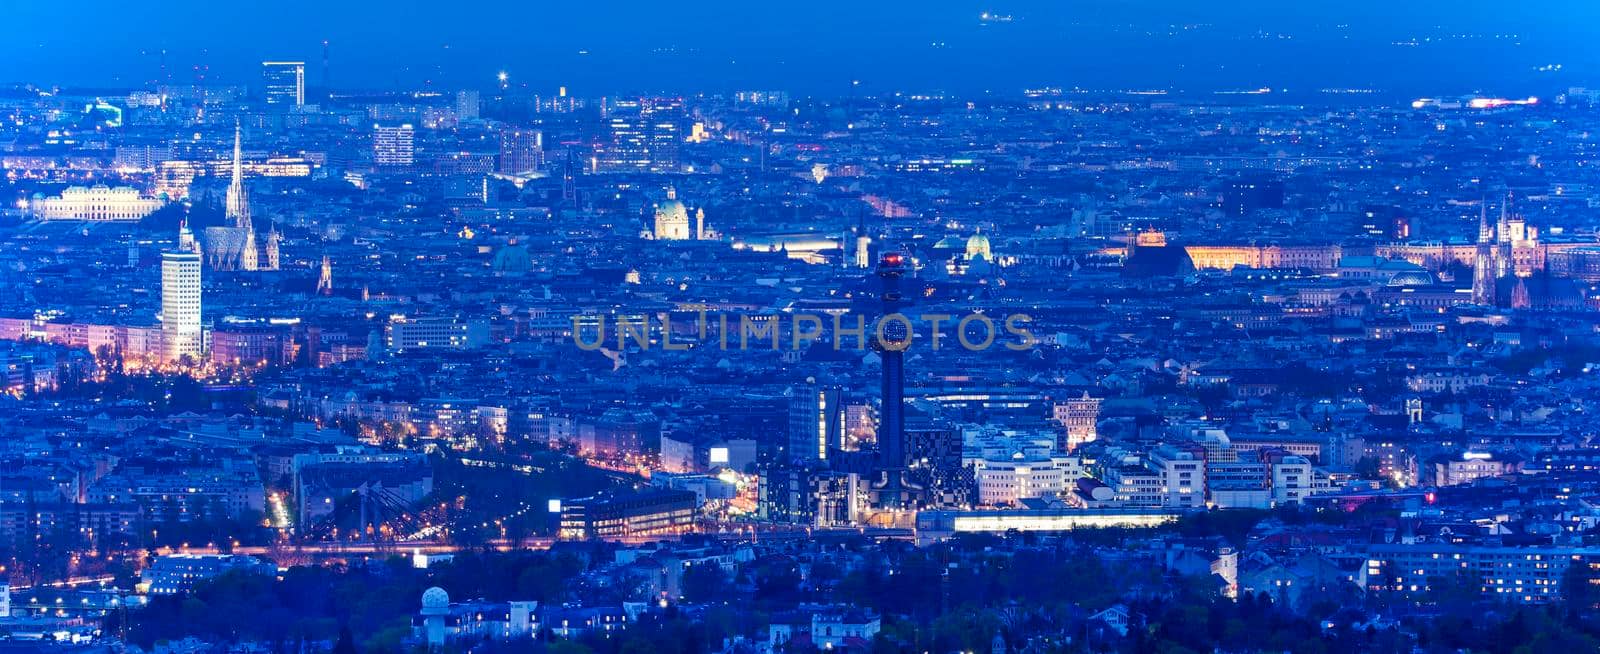 Panorama of Vienna at night. Vienna, Austria.